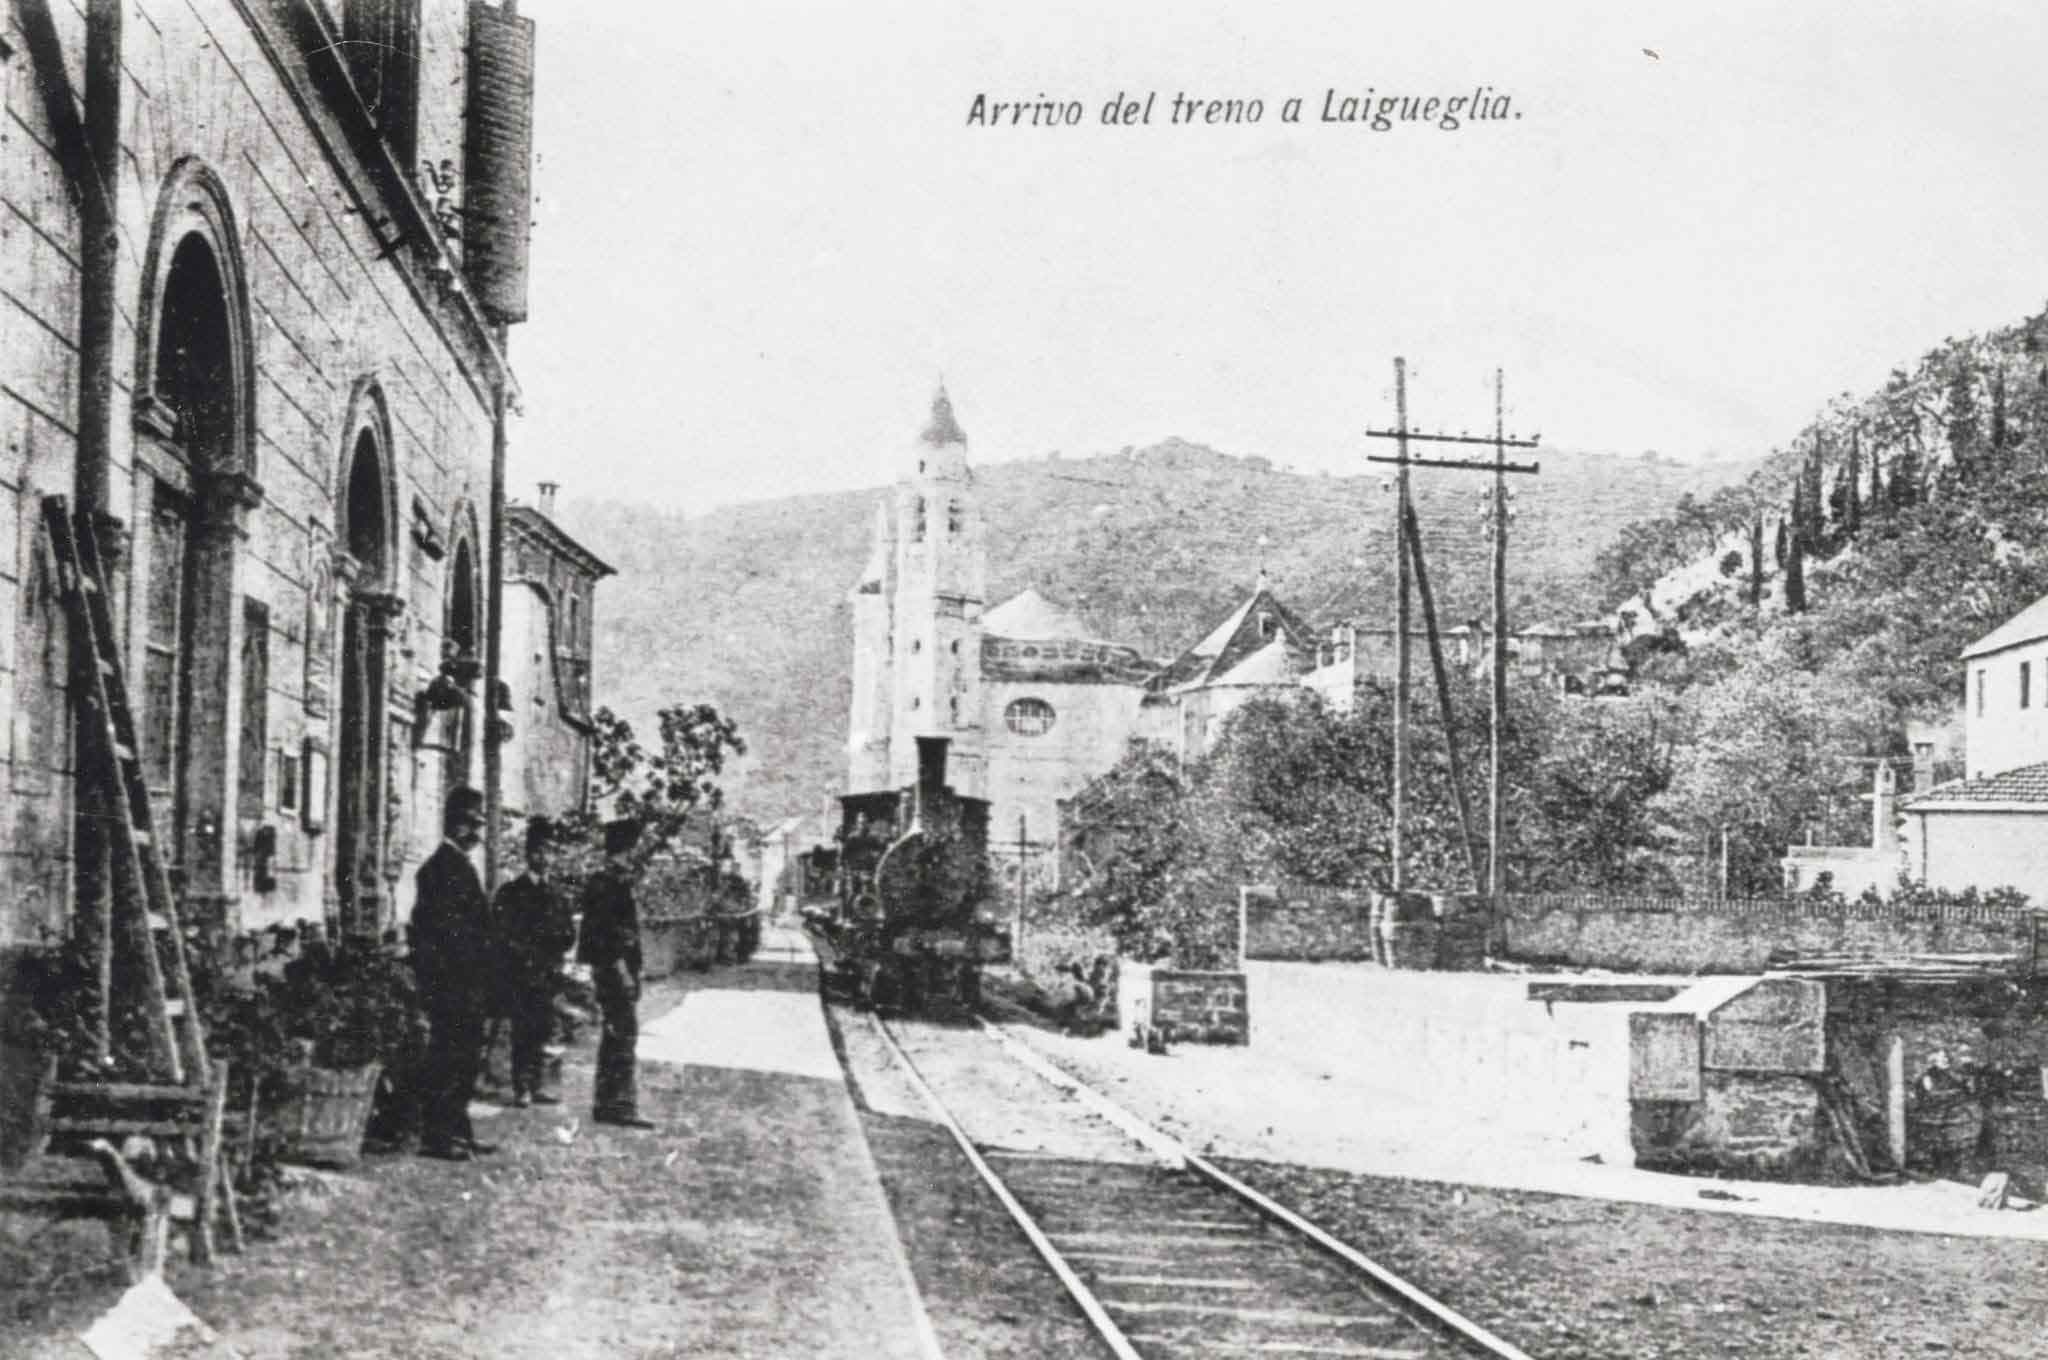 La ferrovia spacca il paese @ Laigueglia - Il borgo